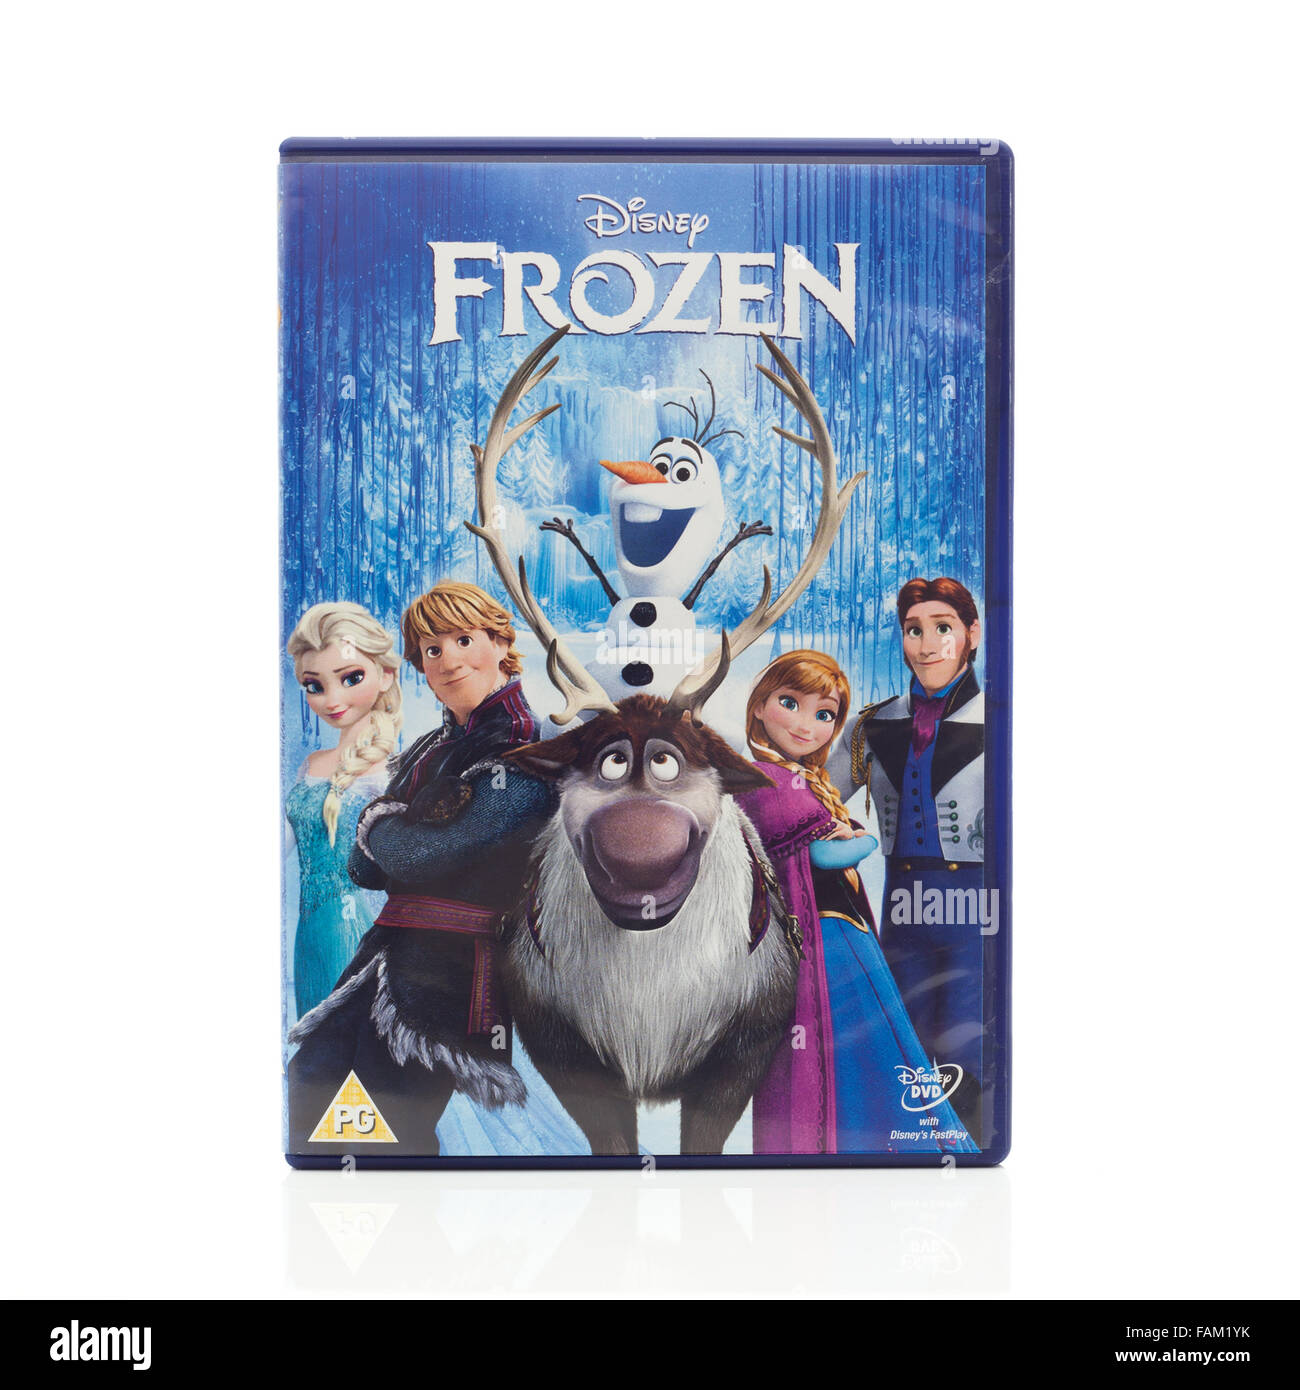 Disney Animation Studios Frozen DVD on a White Background Stock Photo